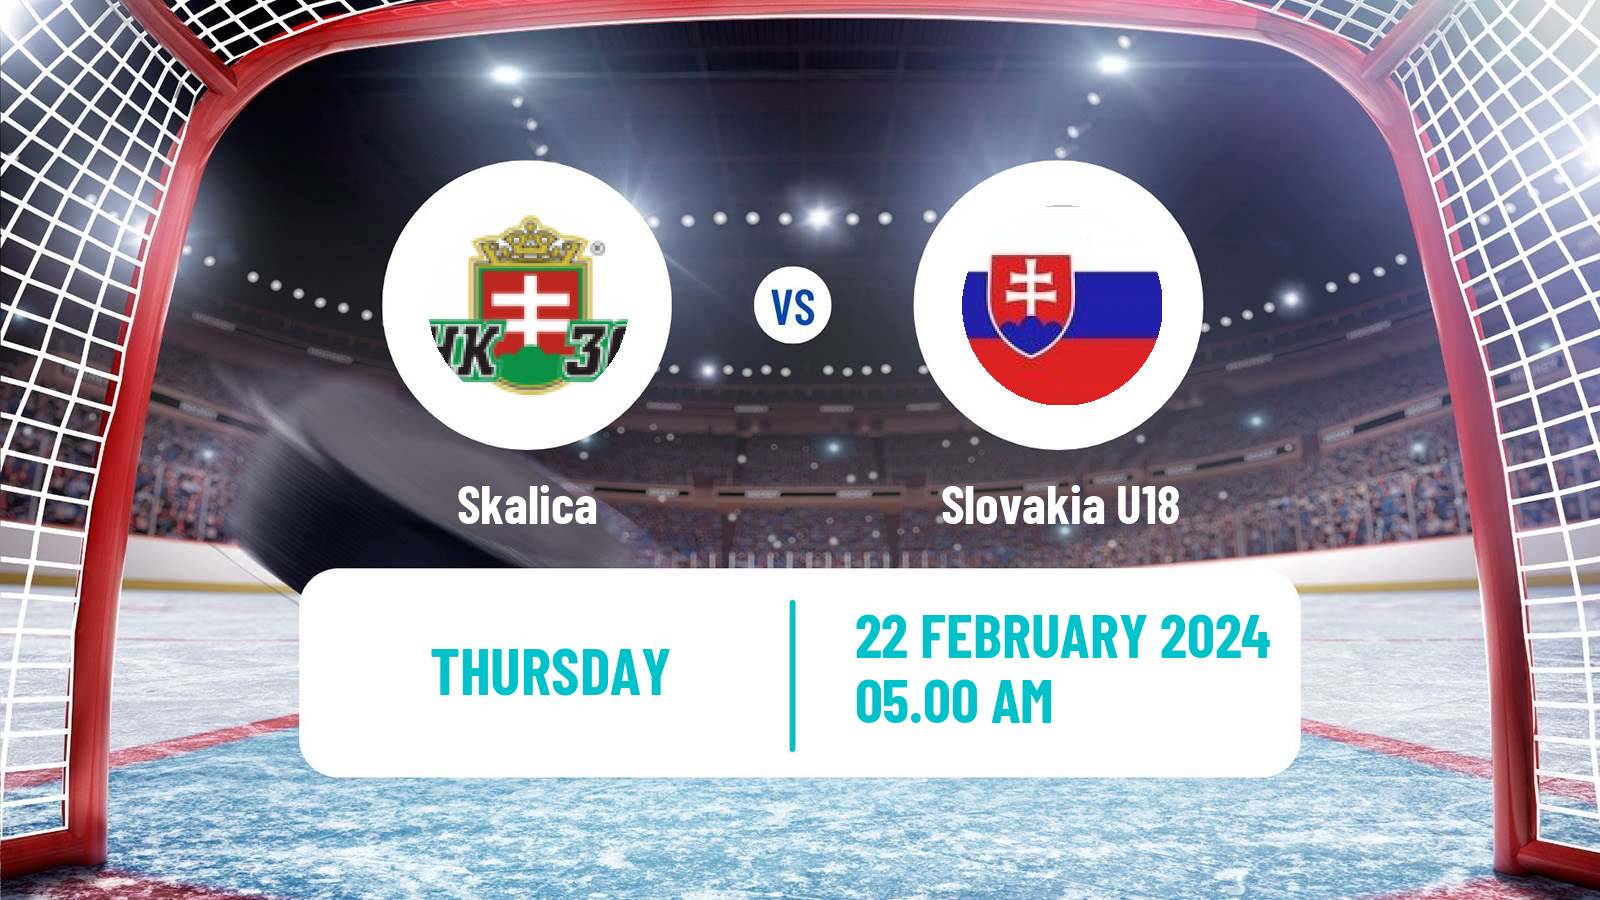 Hockey Slovak 1 Liga Hockey Skalica - Slovakia U18